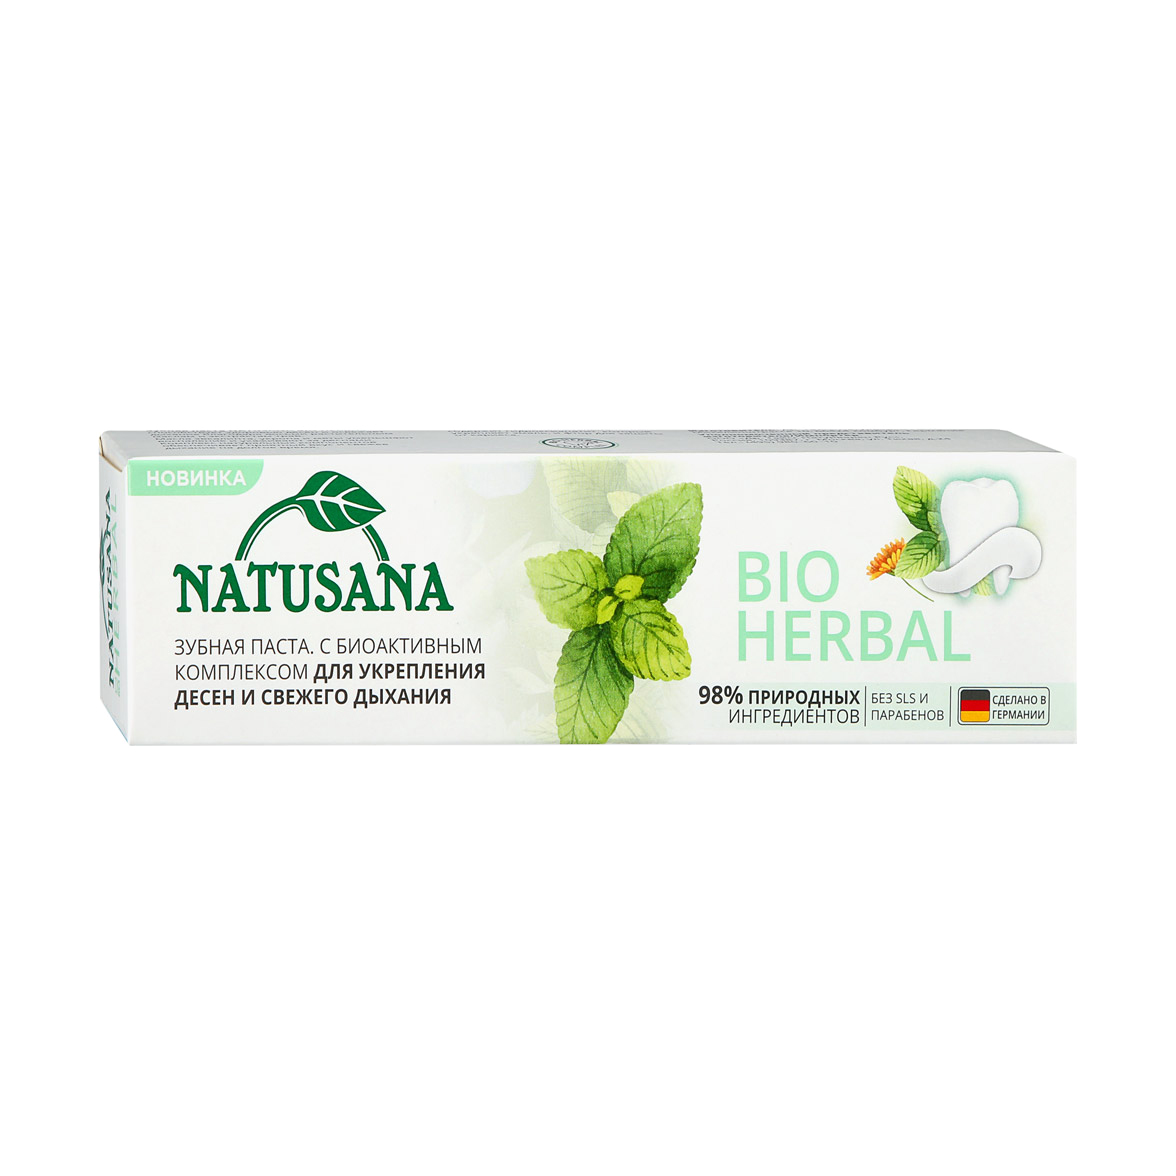 Зубная паста Natusana bio herbal 100 мл зубная паста herbal облепиха и минералы 150 г